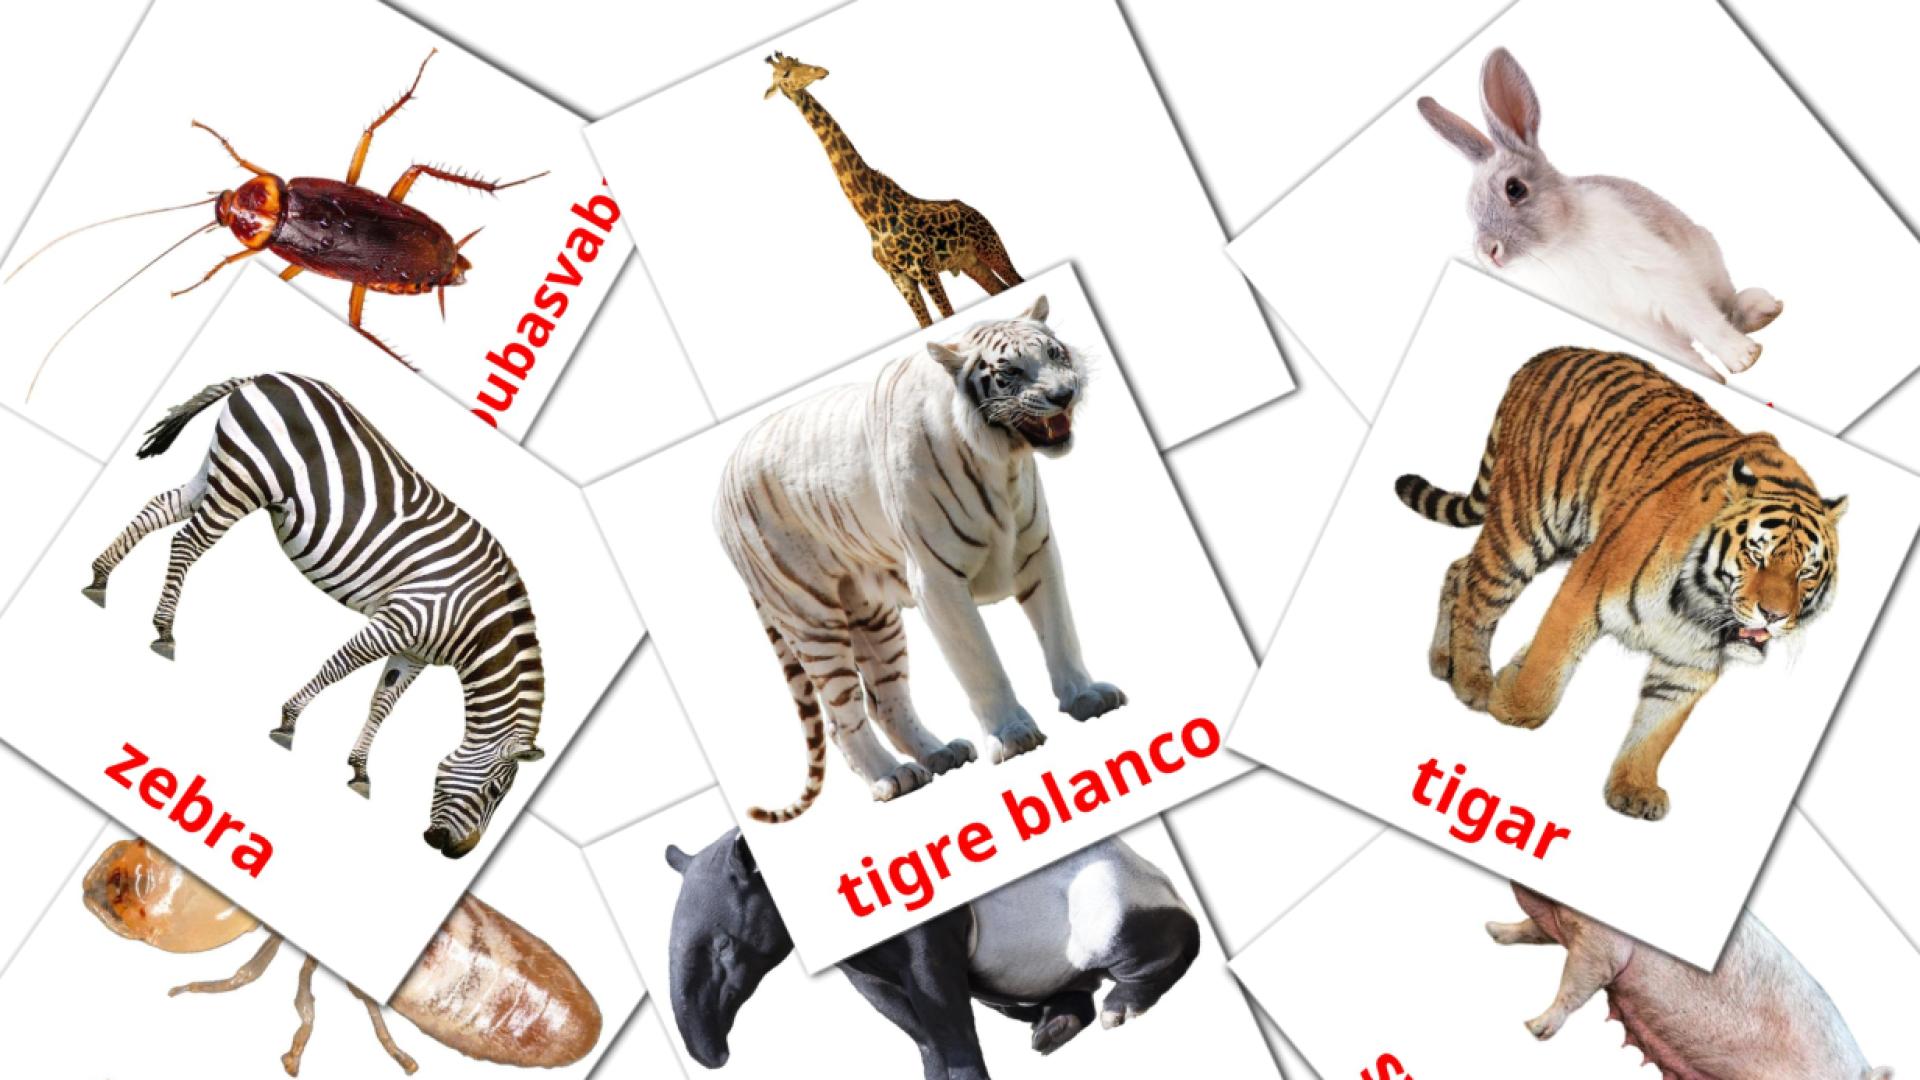 bosnio tarjetas de vocabulario en životinje